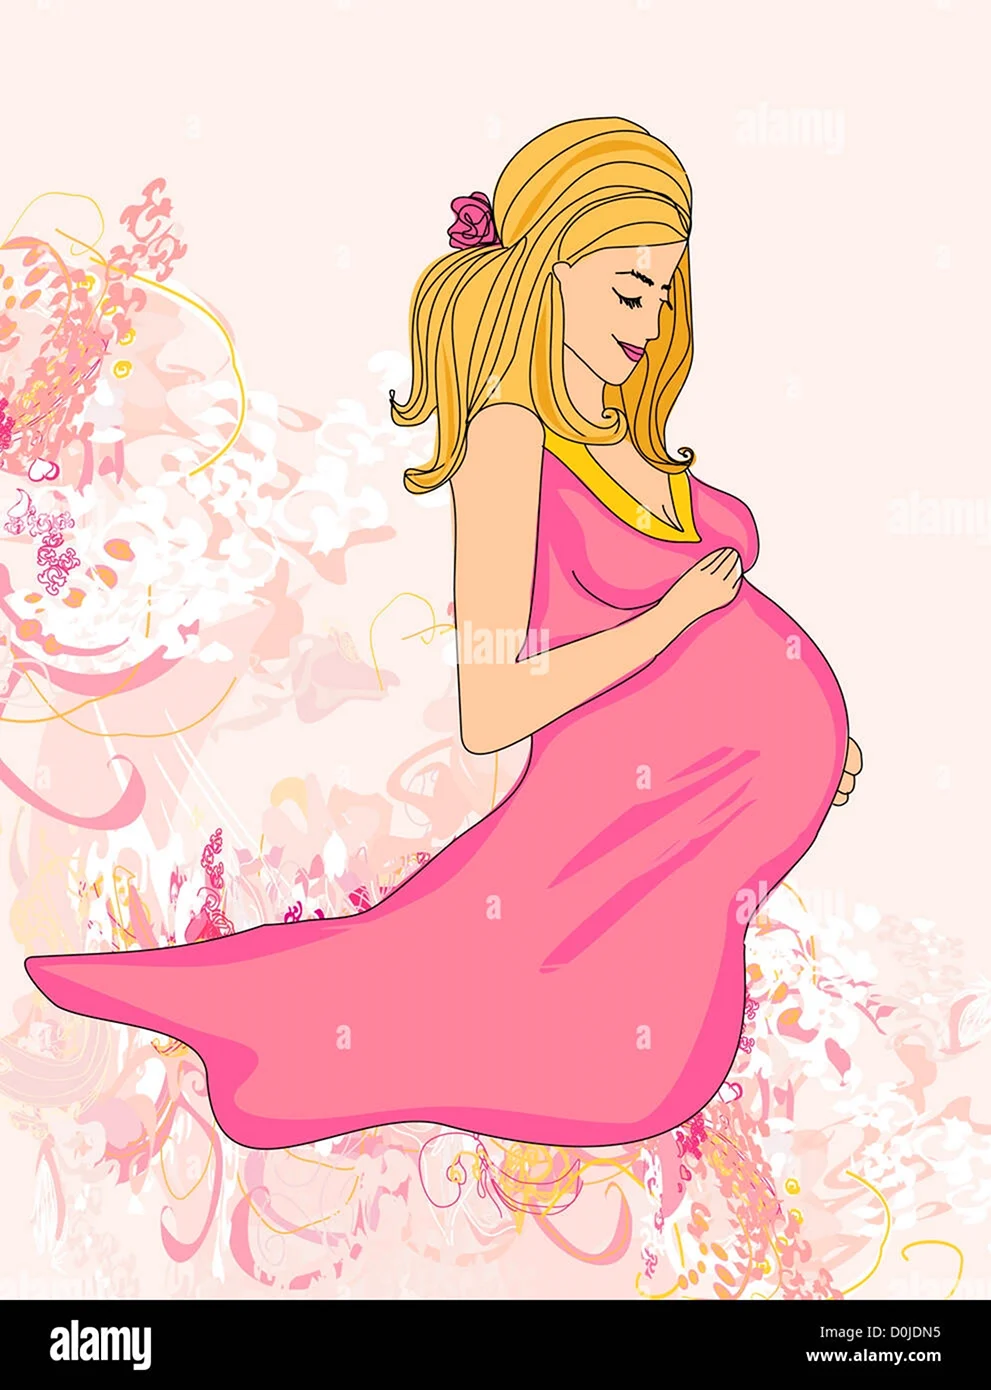 С днём рождения беременной девушке открытка